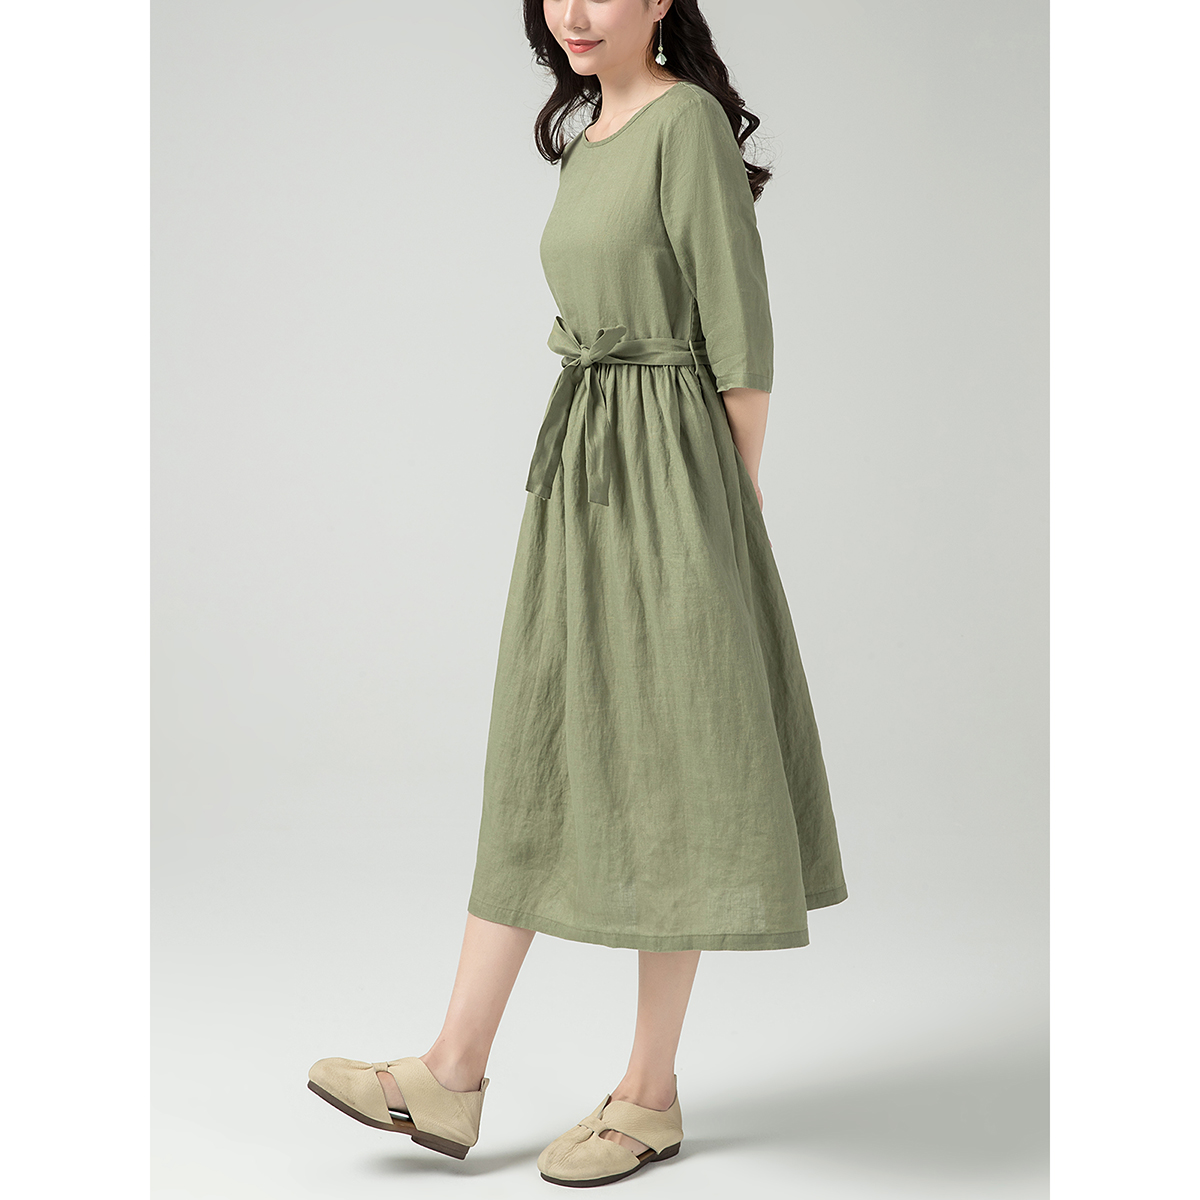 Đầm suông cổ tròn chất đũi mềm mát thấm hút mồ hôi, thời trang phong cách Hàn Da82